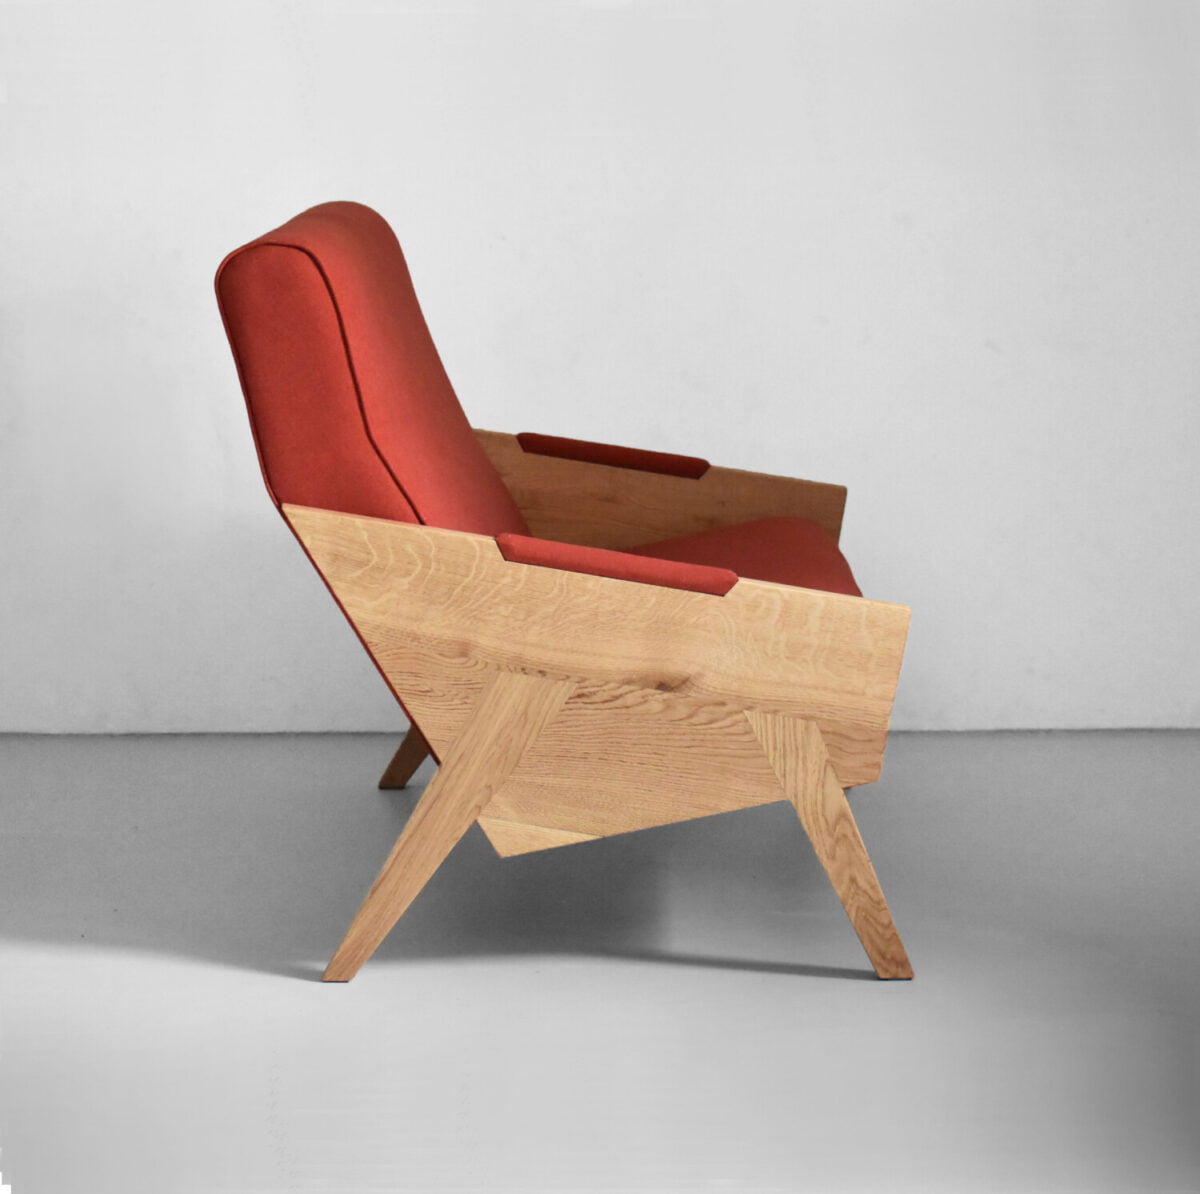 dębowa sofa dwuosobową w skandynawskim stylu, czerwona sofa , oryginalna kanapa